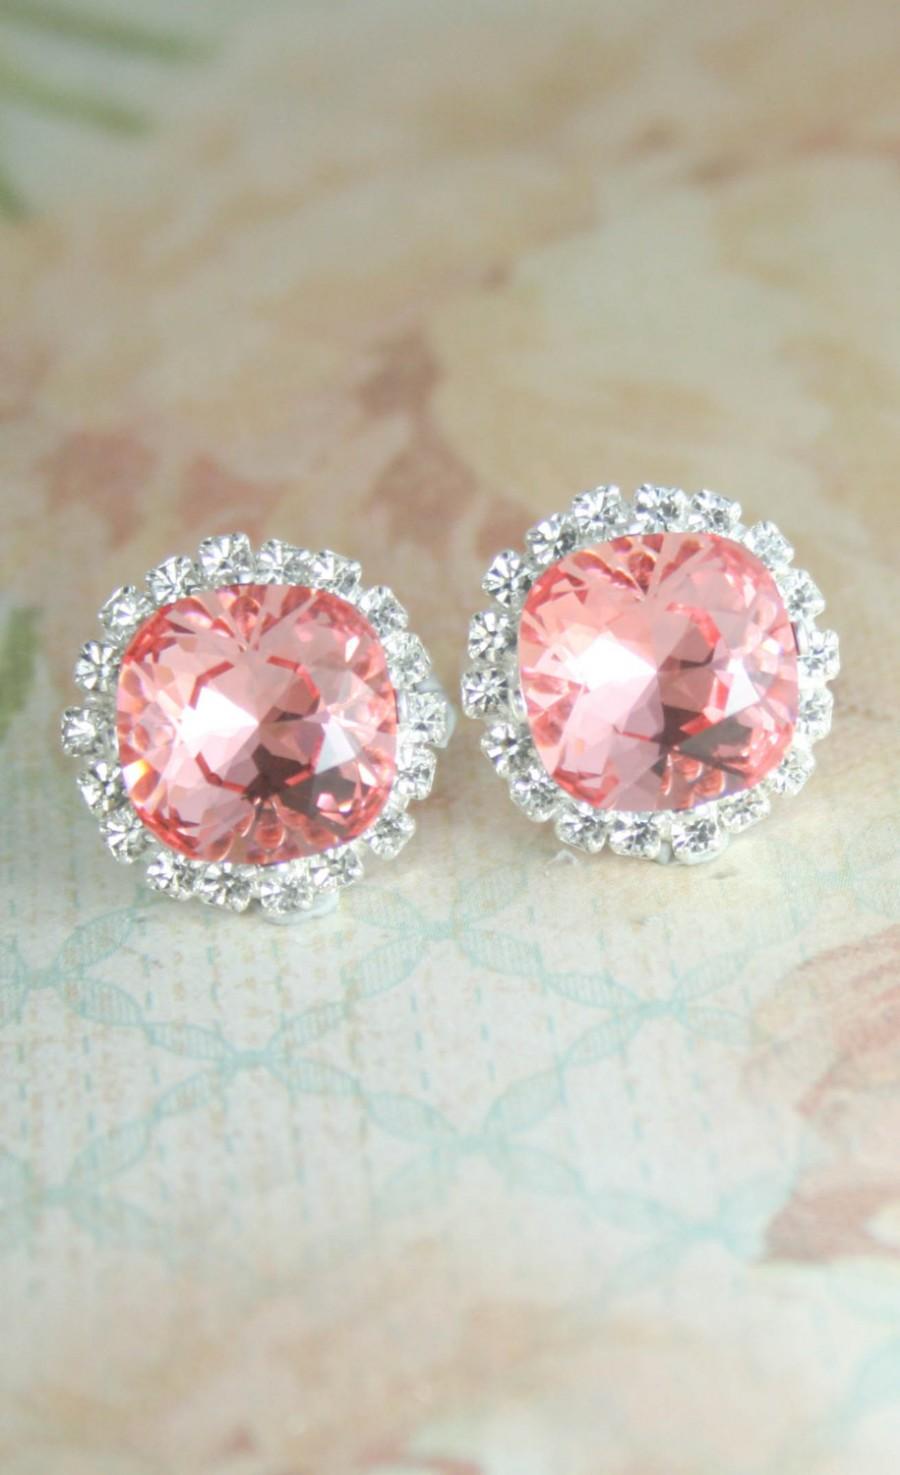 Wedding - Pink crystal earrings,swarovski earrings,square earrings,stud earrings,crystal earrings,bridal earrings,bridesmaid earrings,pink wedding